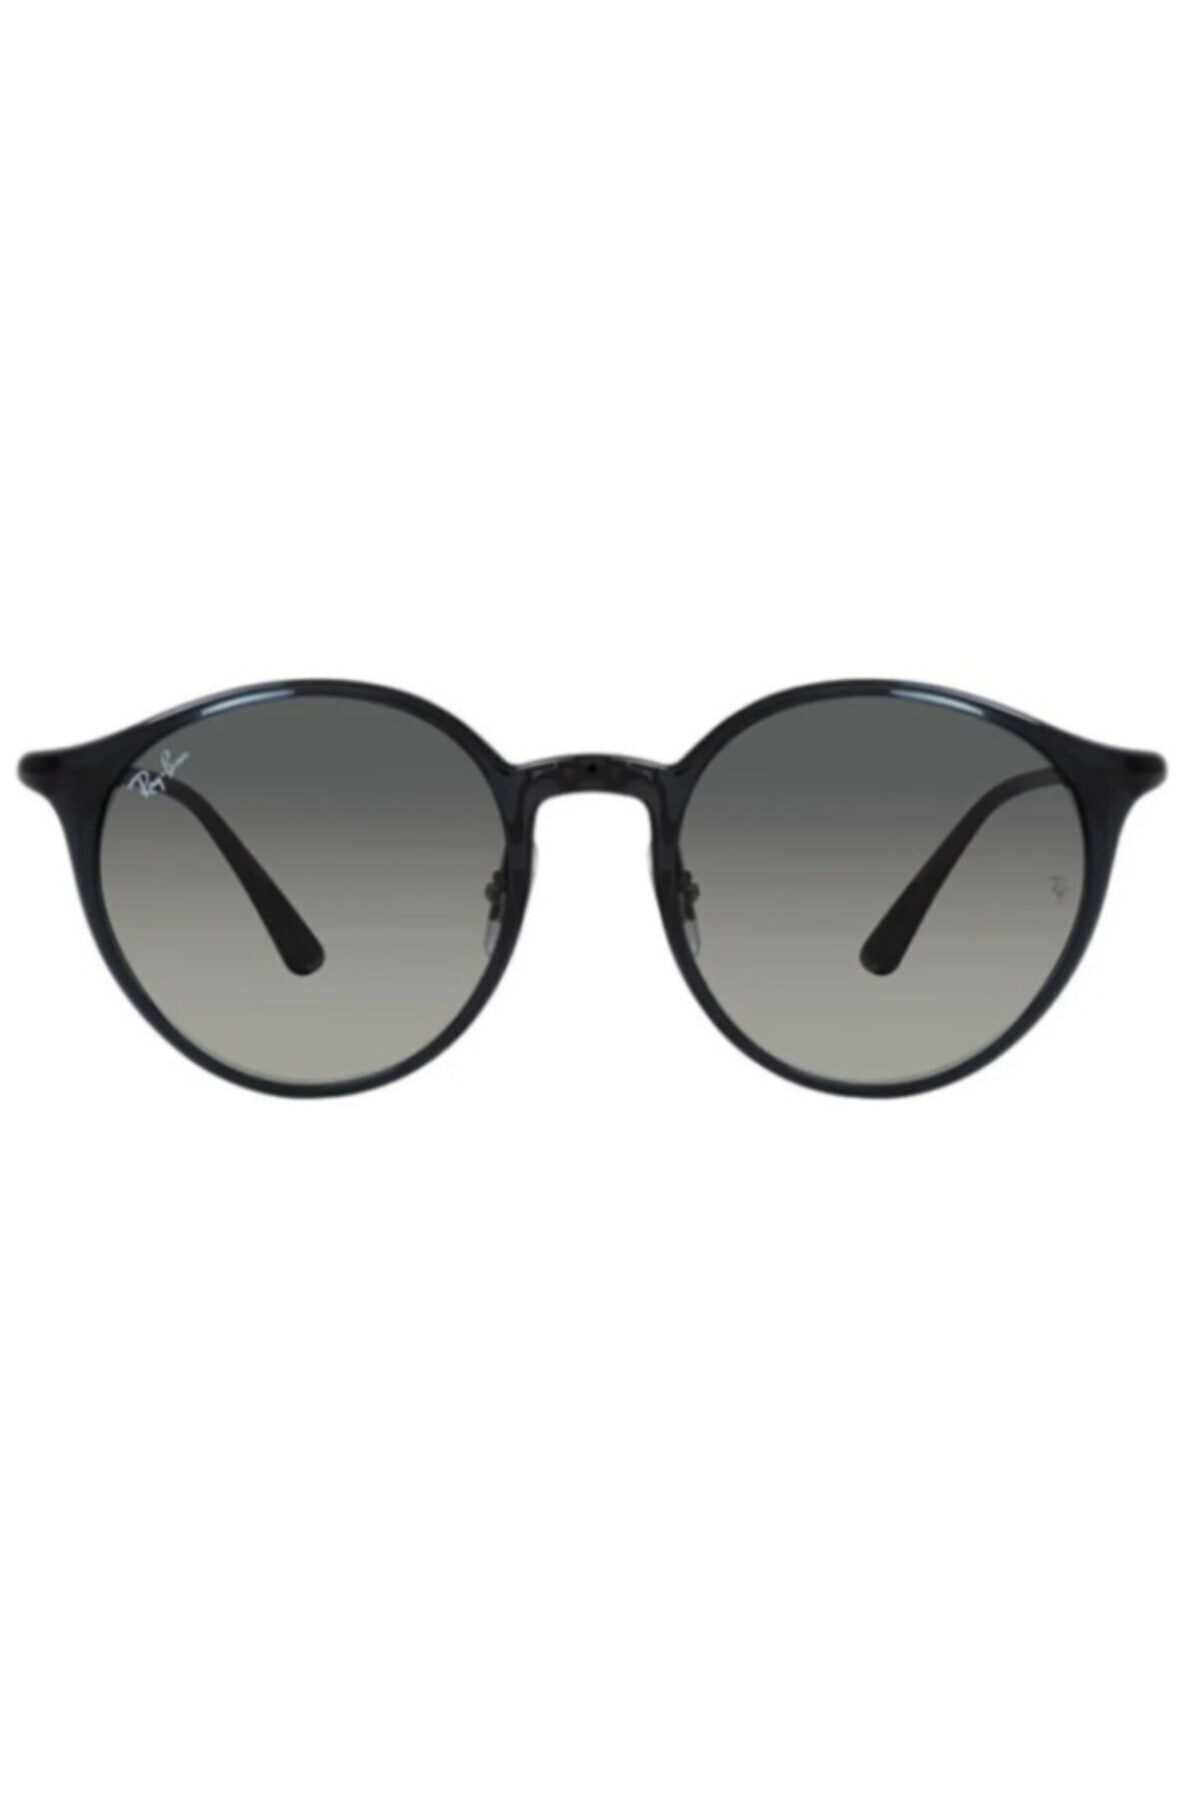 فروش انلاین عینک آفتابی اسپرت برند ری بن Gri Degrade ty121800497